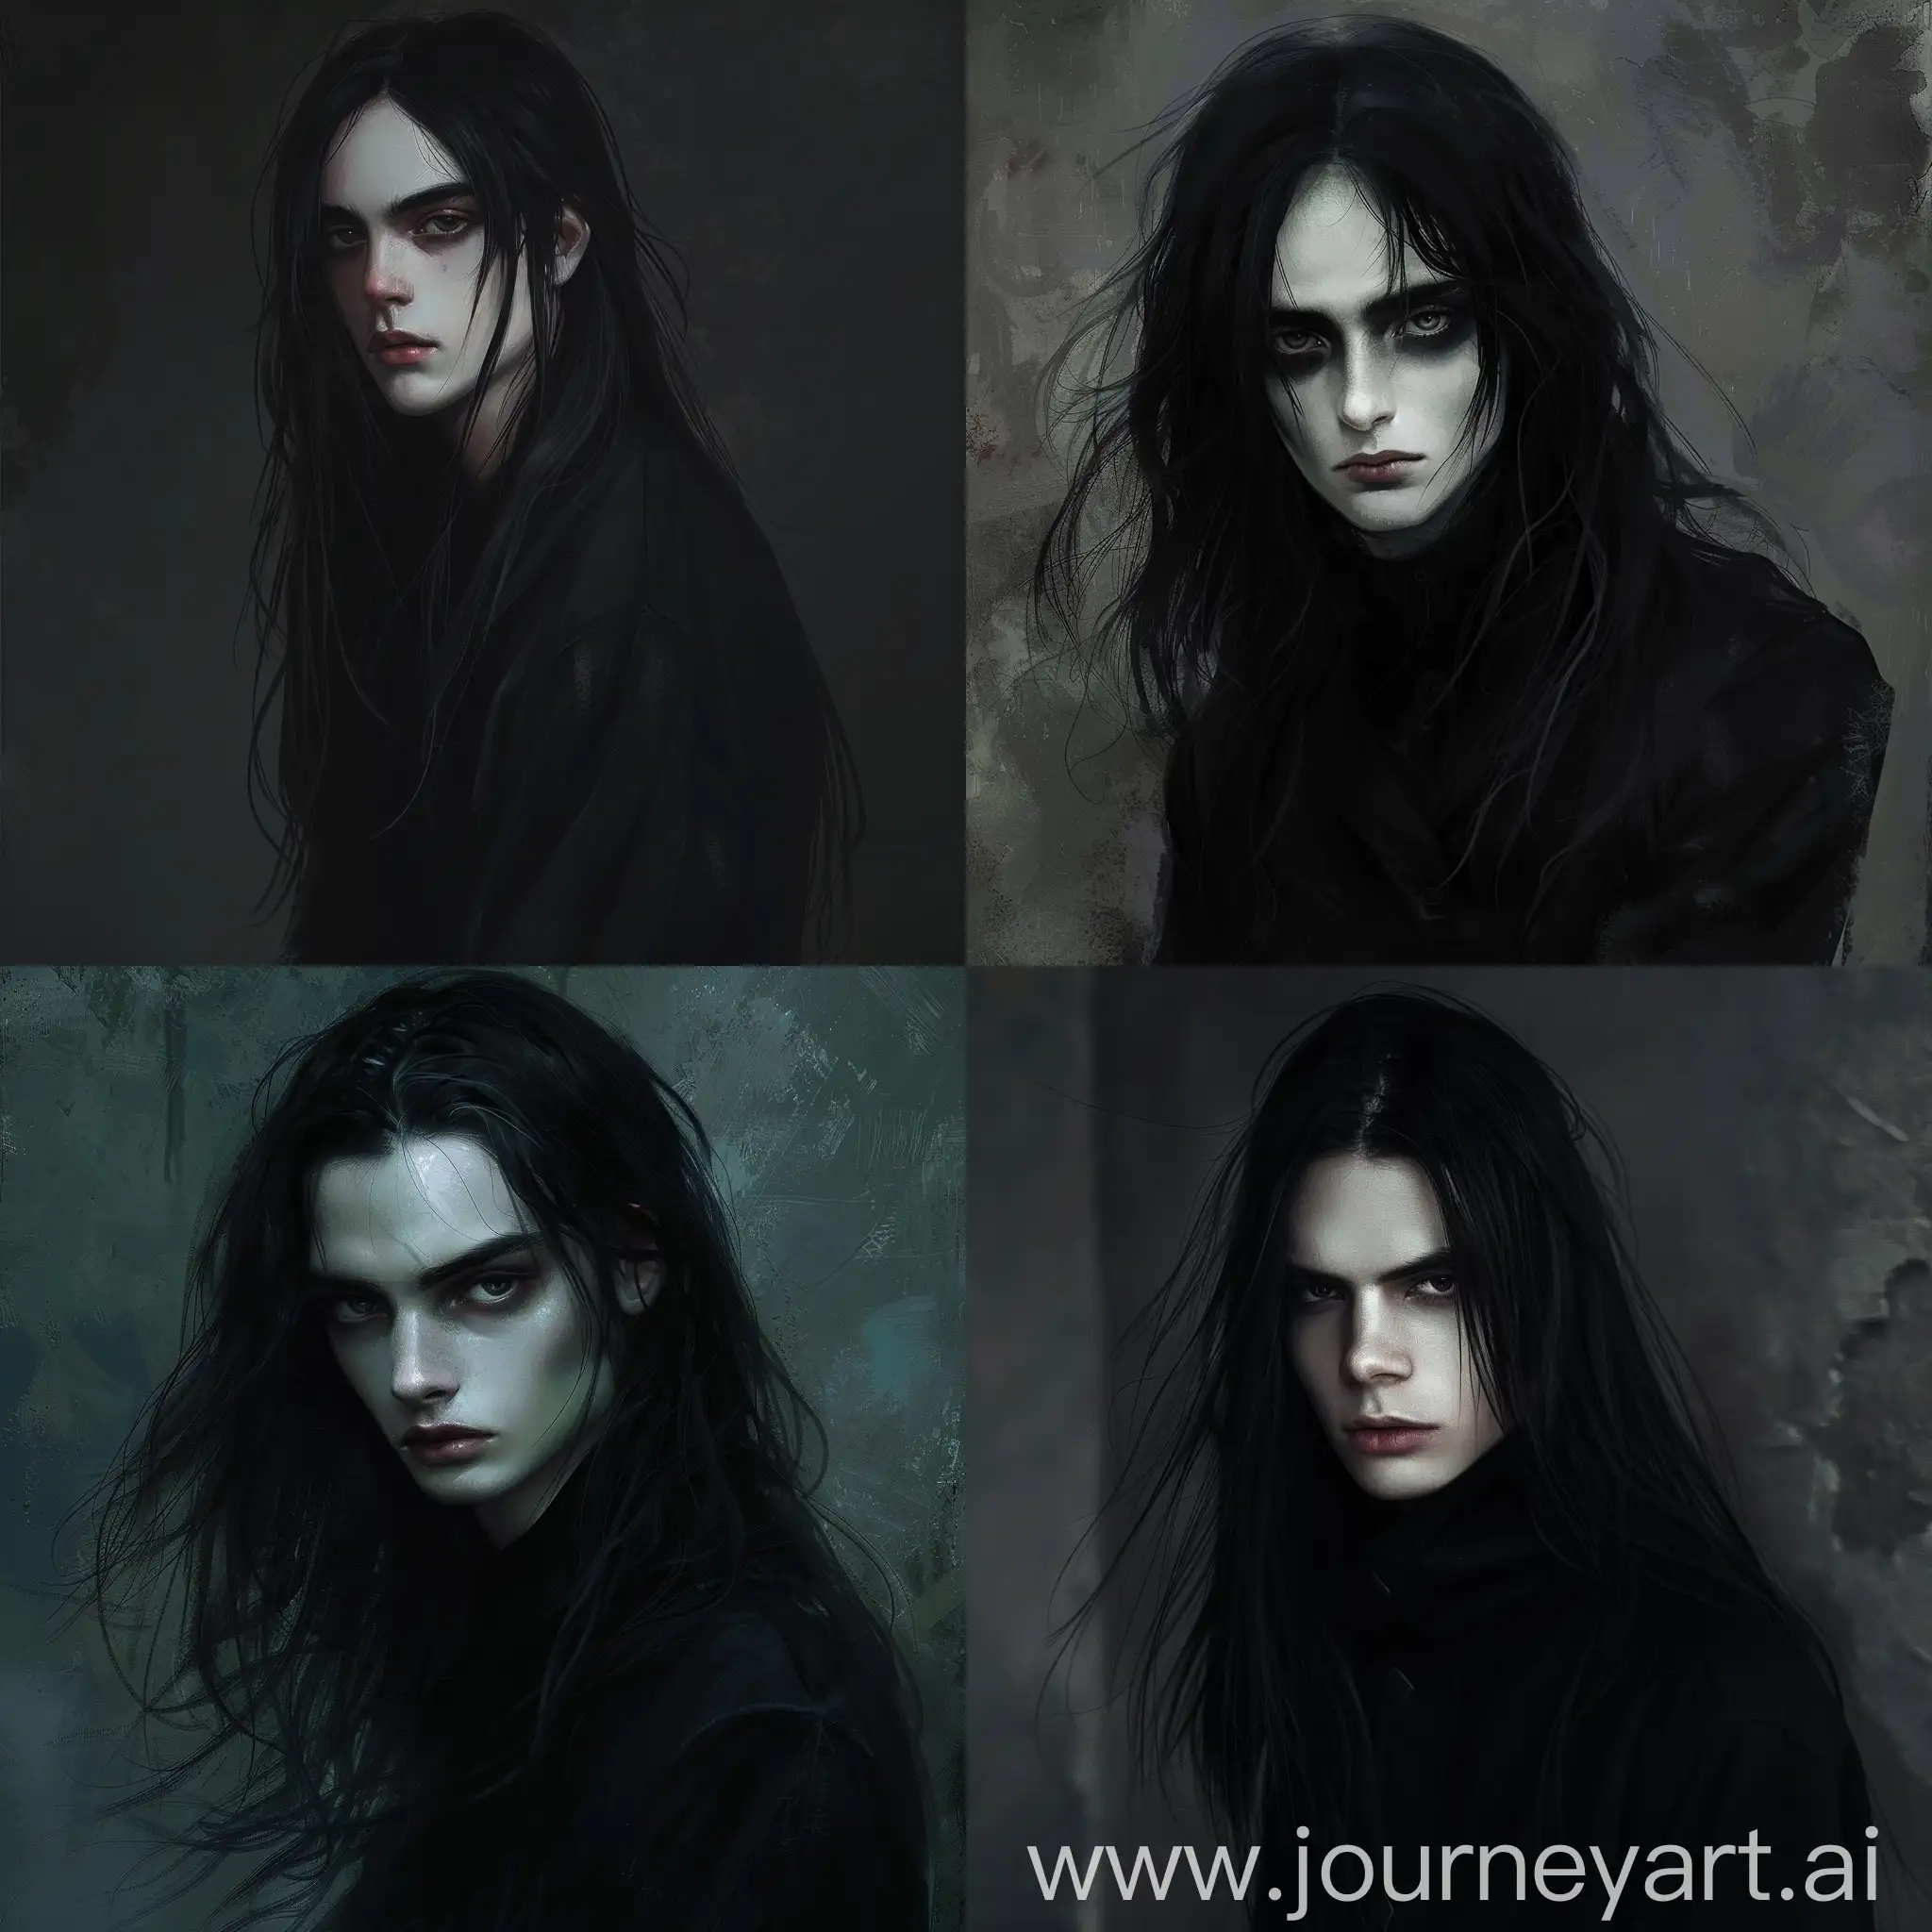 мрачный арт с красивым мальчиком, у которого длинные черные волосы, в черной одежде, с темными глазами, кожа бледная 